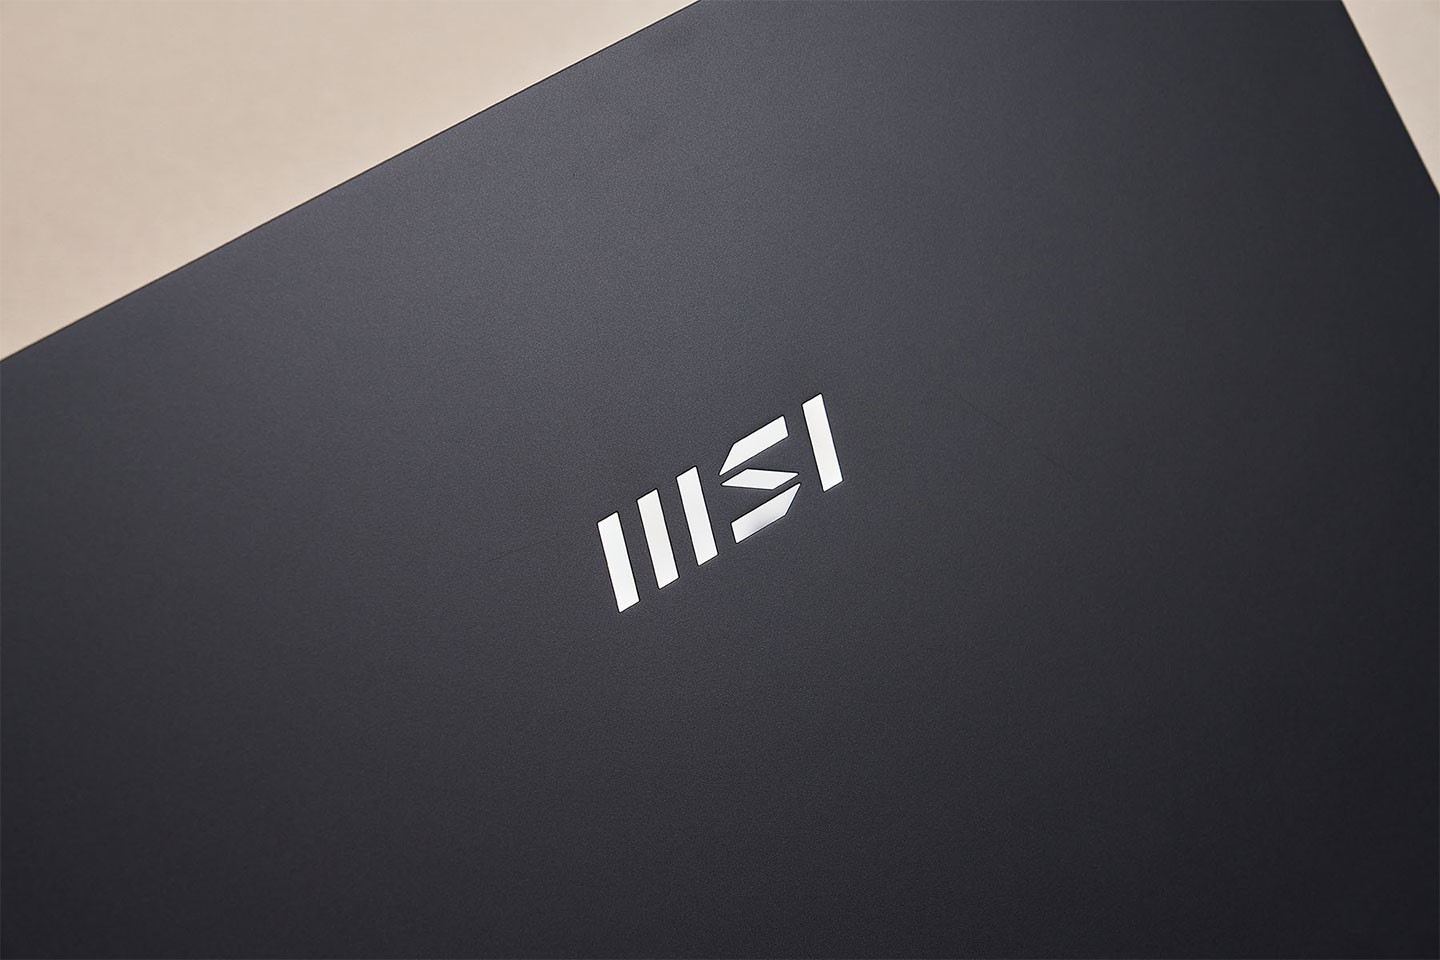 上蓋處規劃了一枚 MSI 新式企別 Logo，金屬亮面風格與霧面深色的上蓋形成強烈的對比。